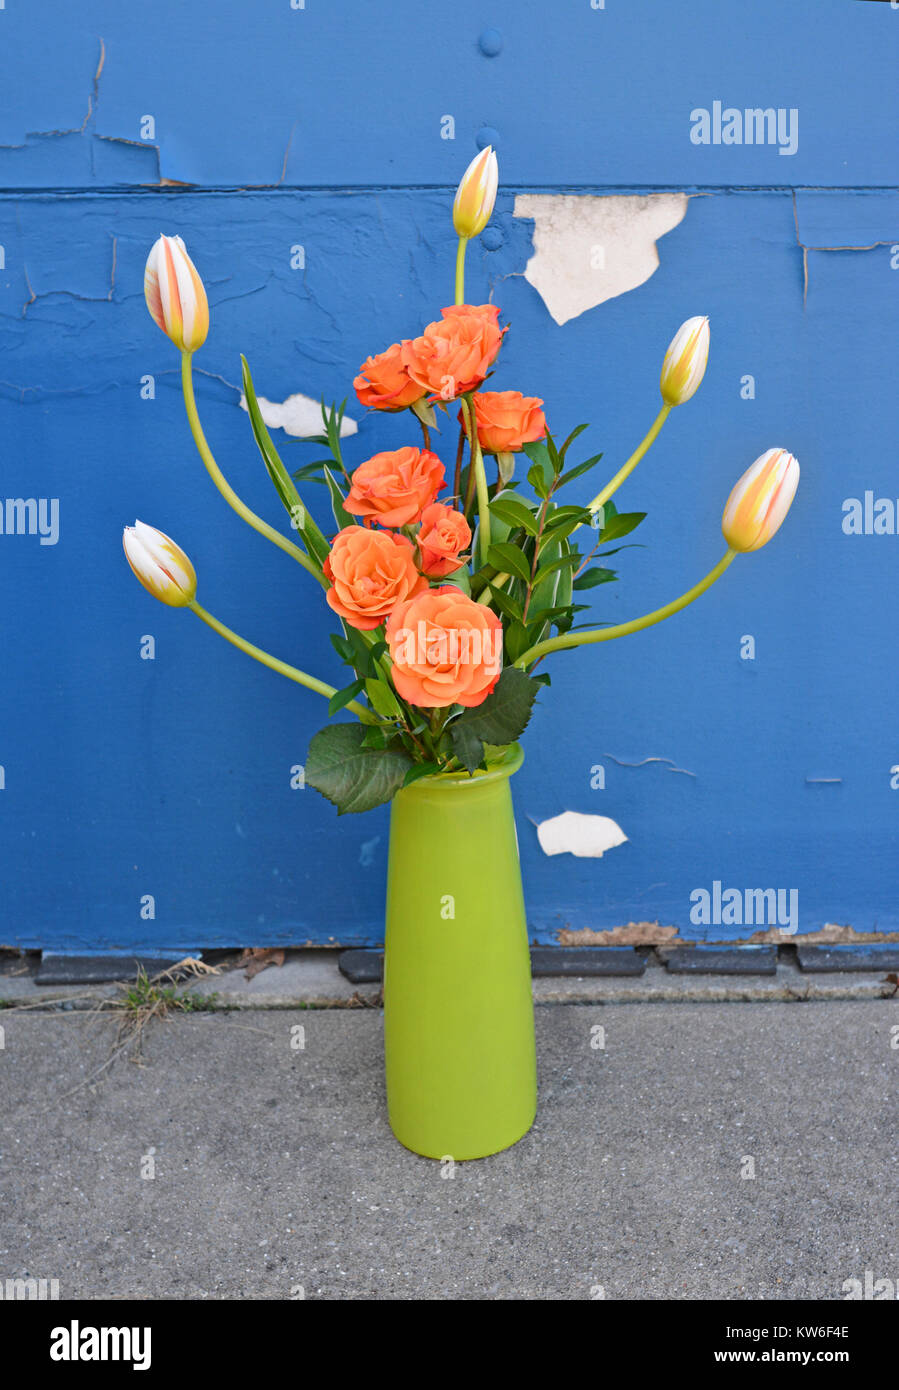 Grand arrangement de roses orange et tulipes dans un vase vert sur un fond de peinture bleue de déroulage. Banque D'Images